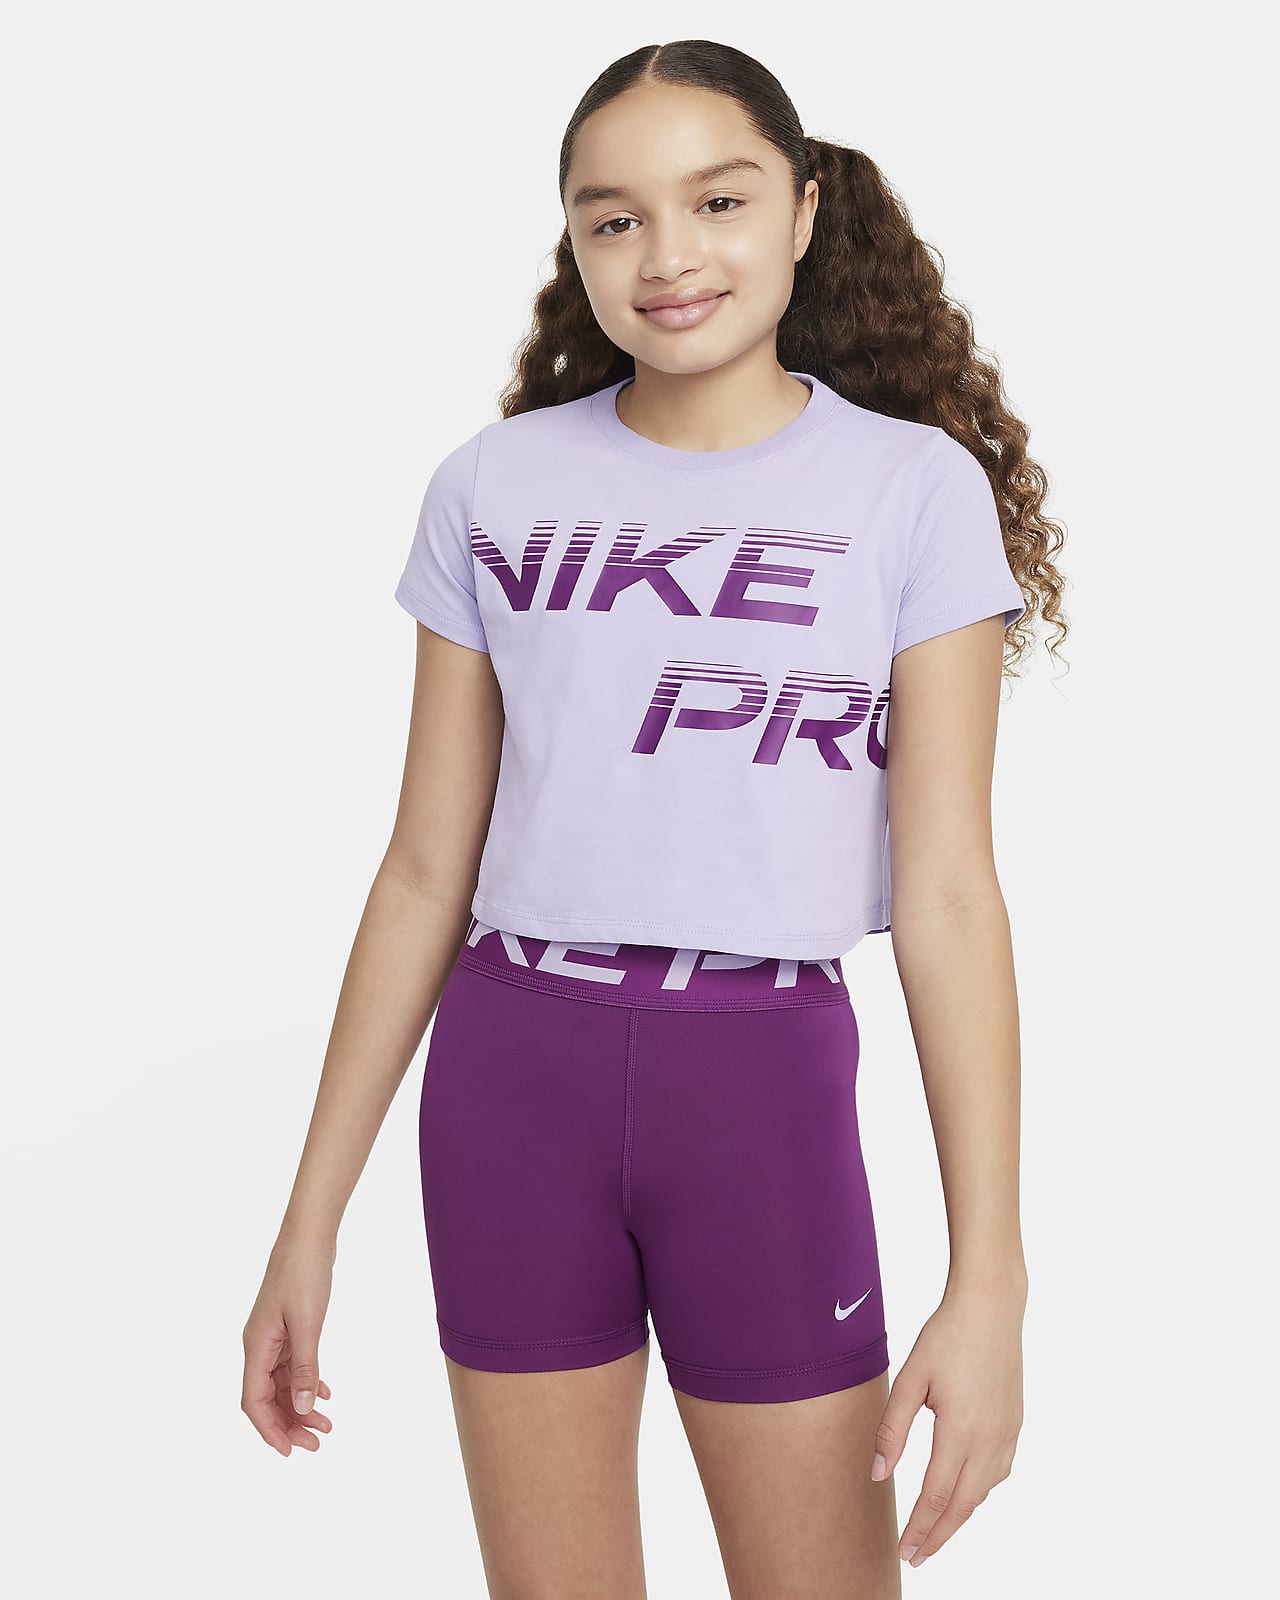 เสื้อยืดเอวลอยเด็กโต Dri-FIT Nike Pro (หญิง)